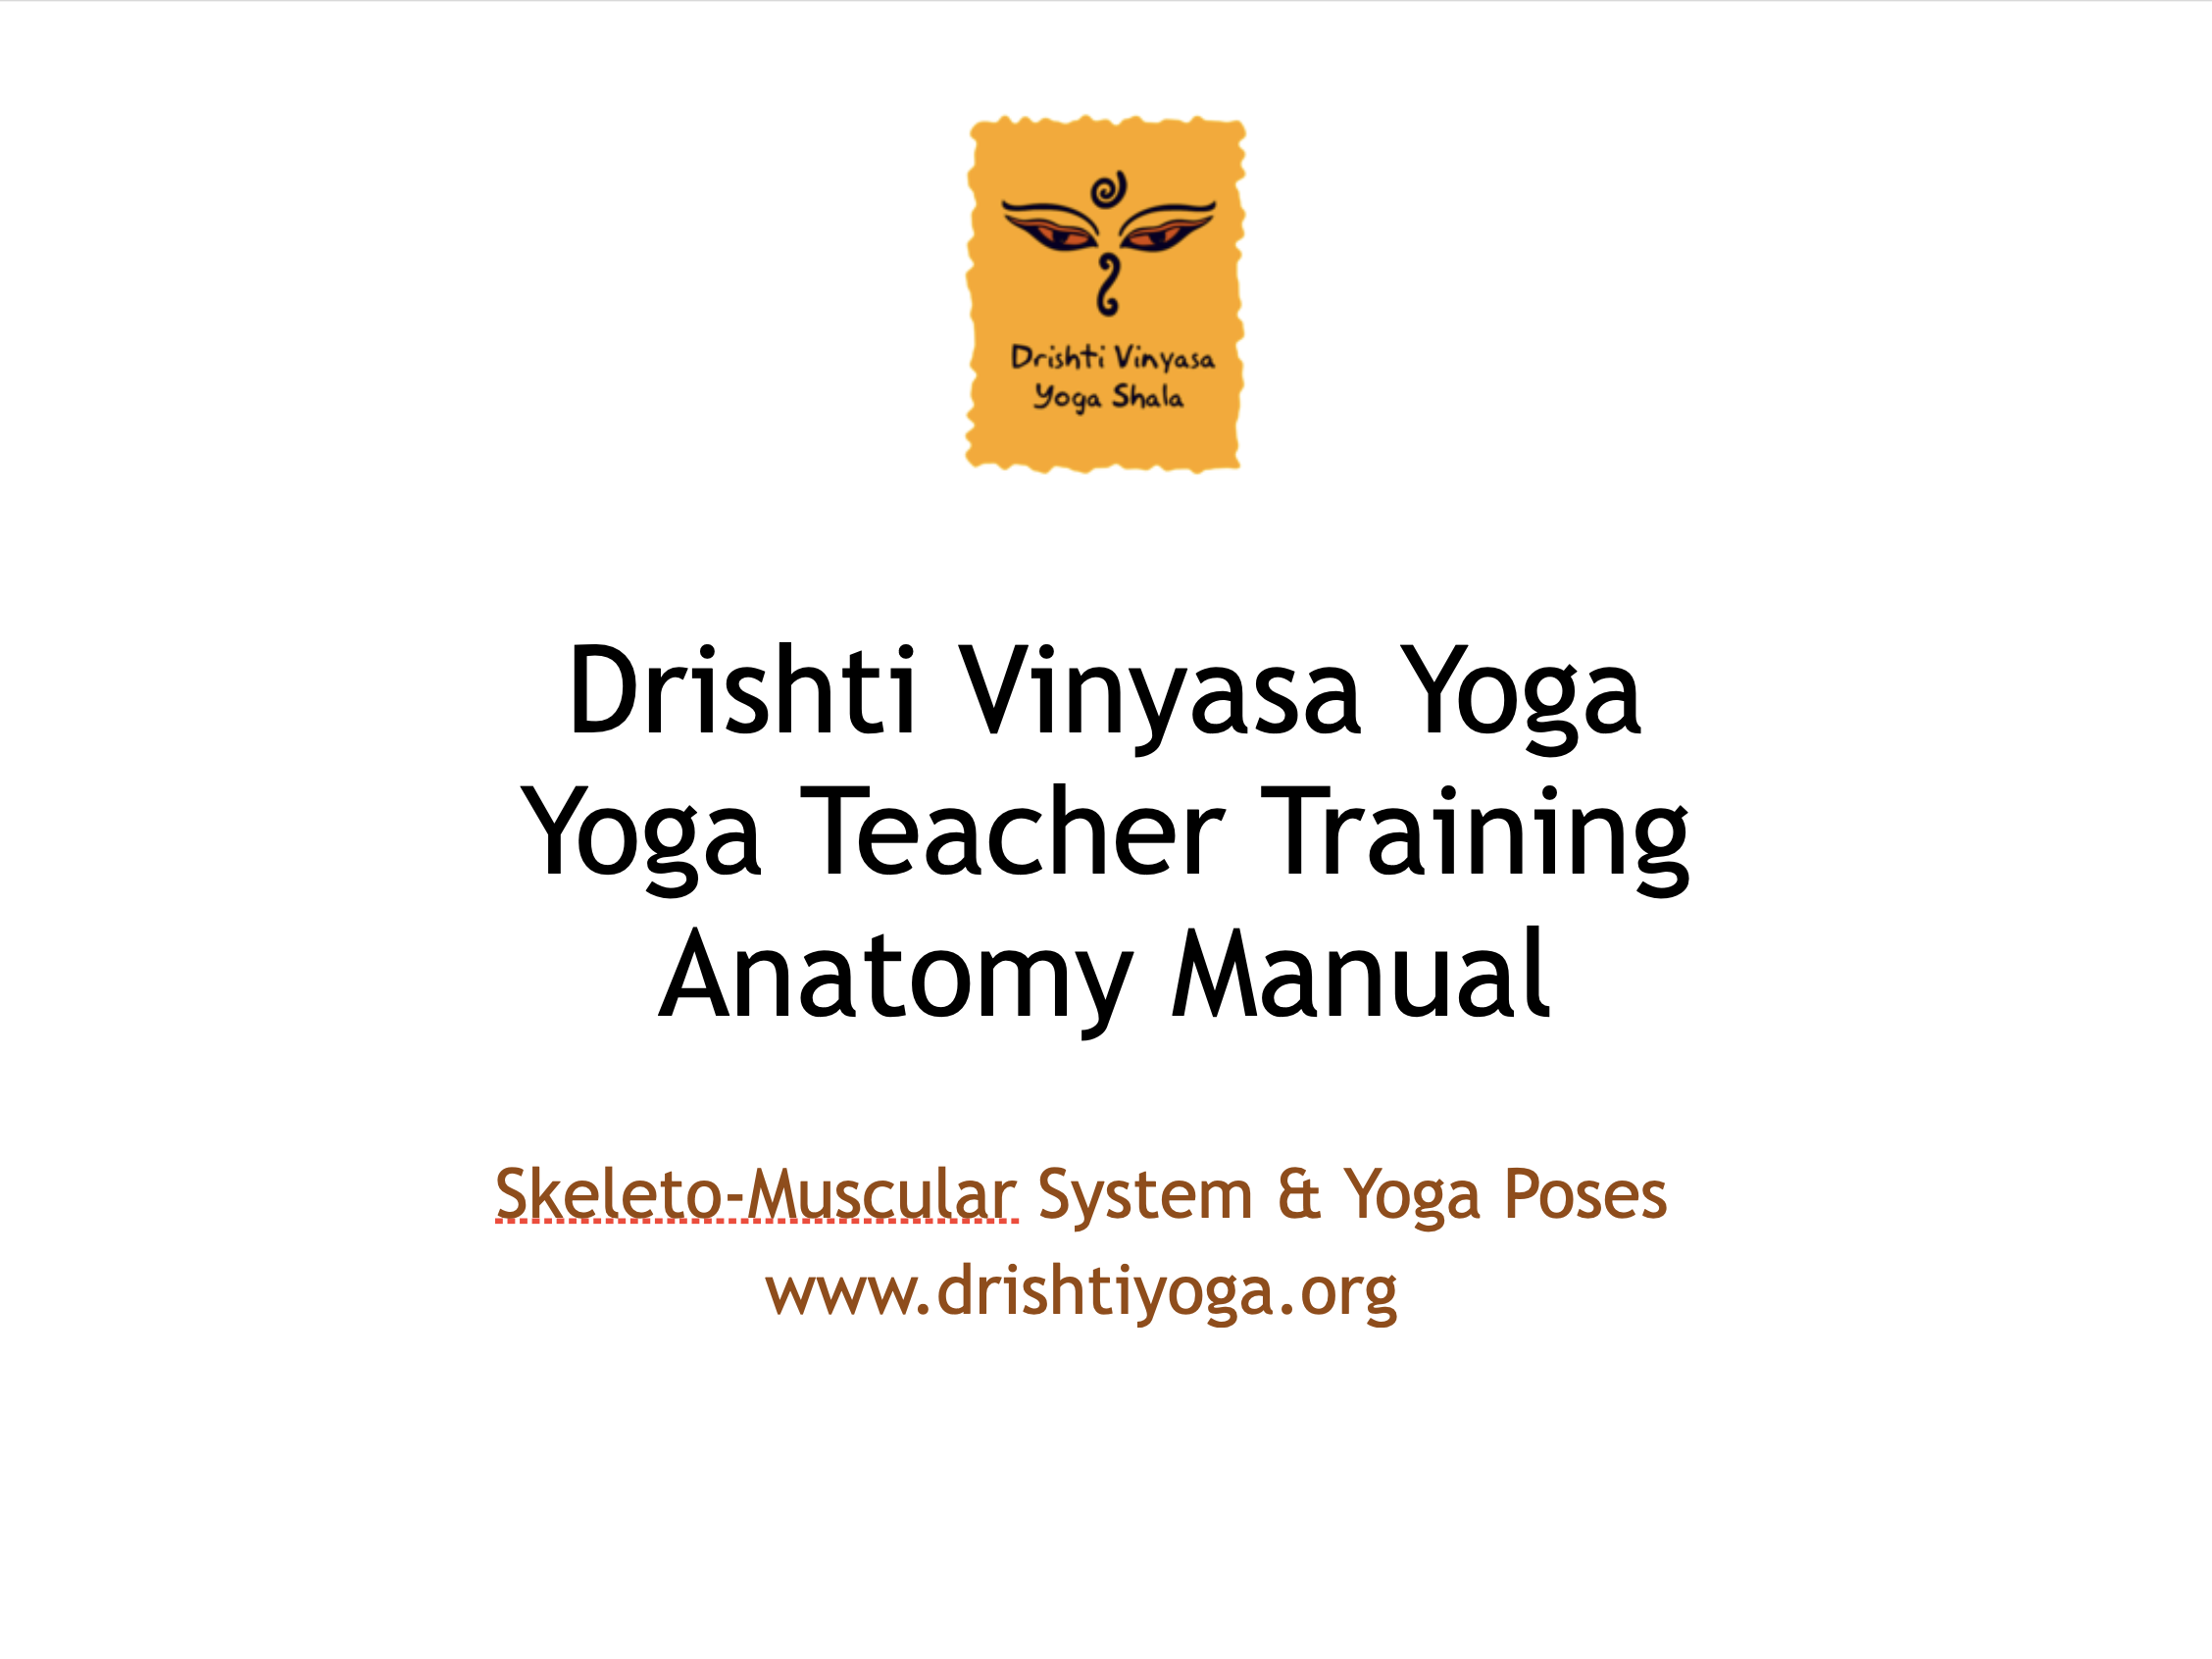 Drishti Vinyasa Yoga Manual Screen 8.png